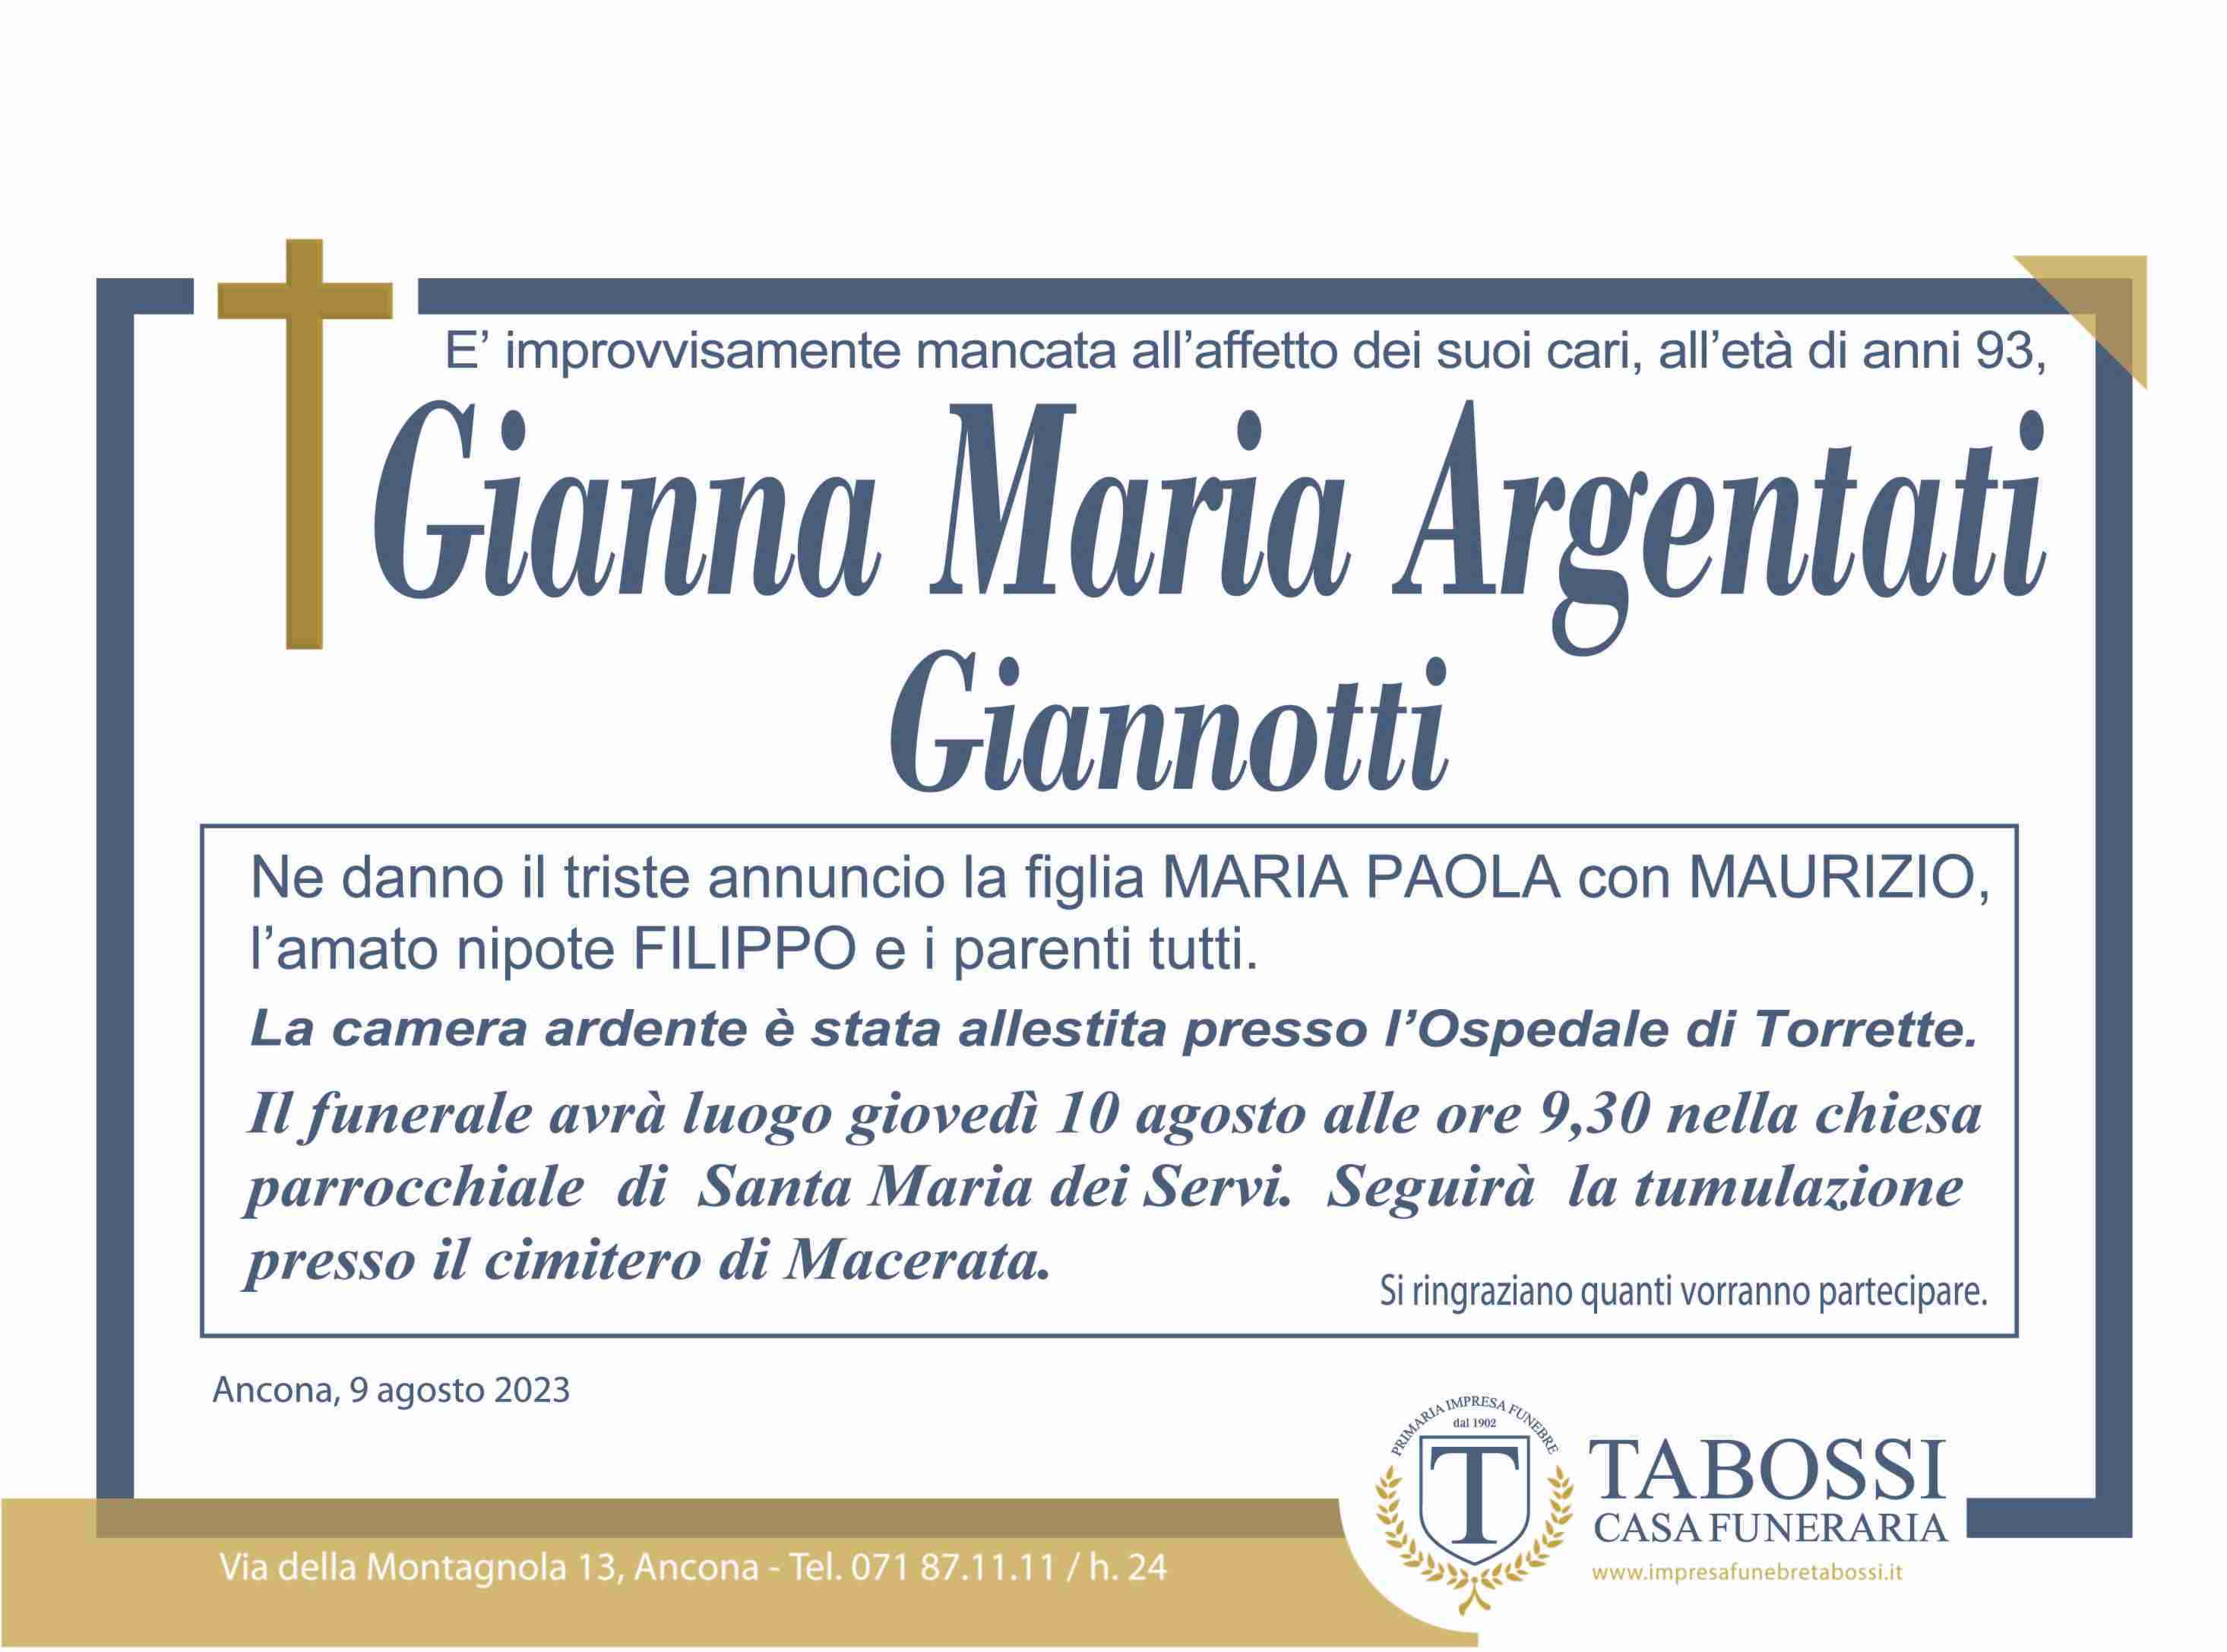 Gianna Maria Argentati Giannotti